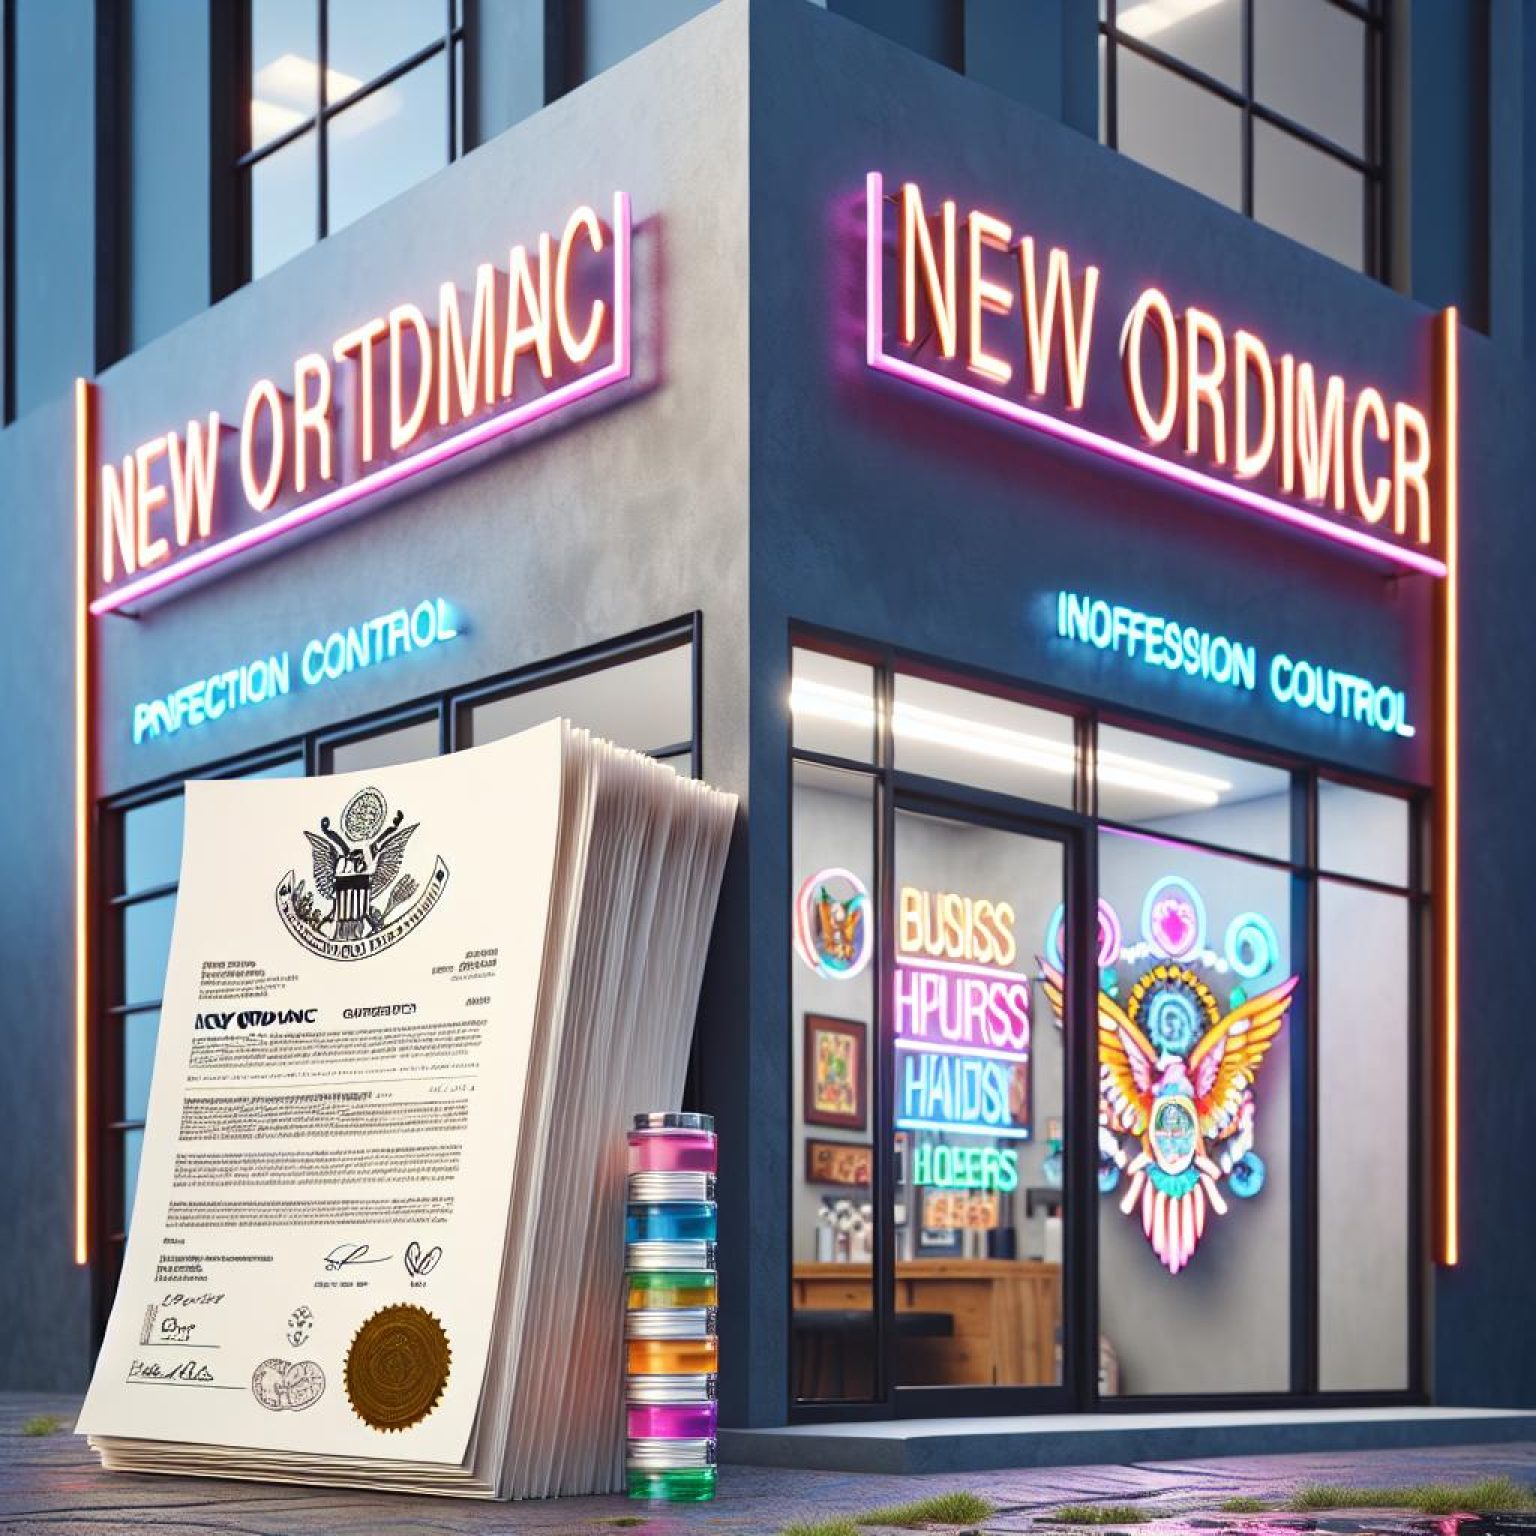 "New tattoo shop ordinance"